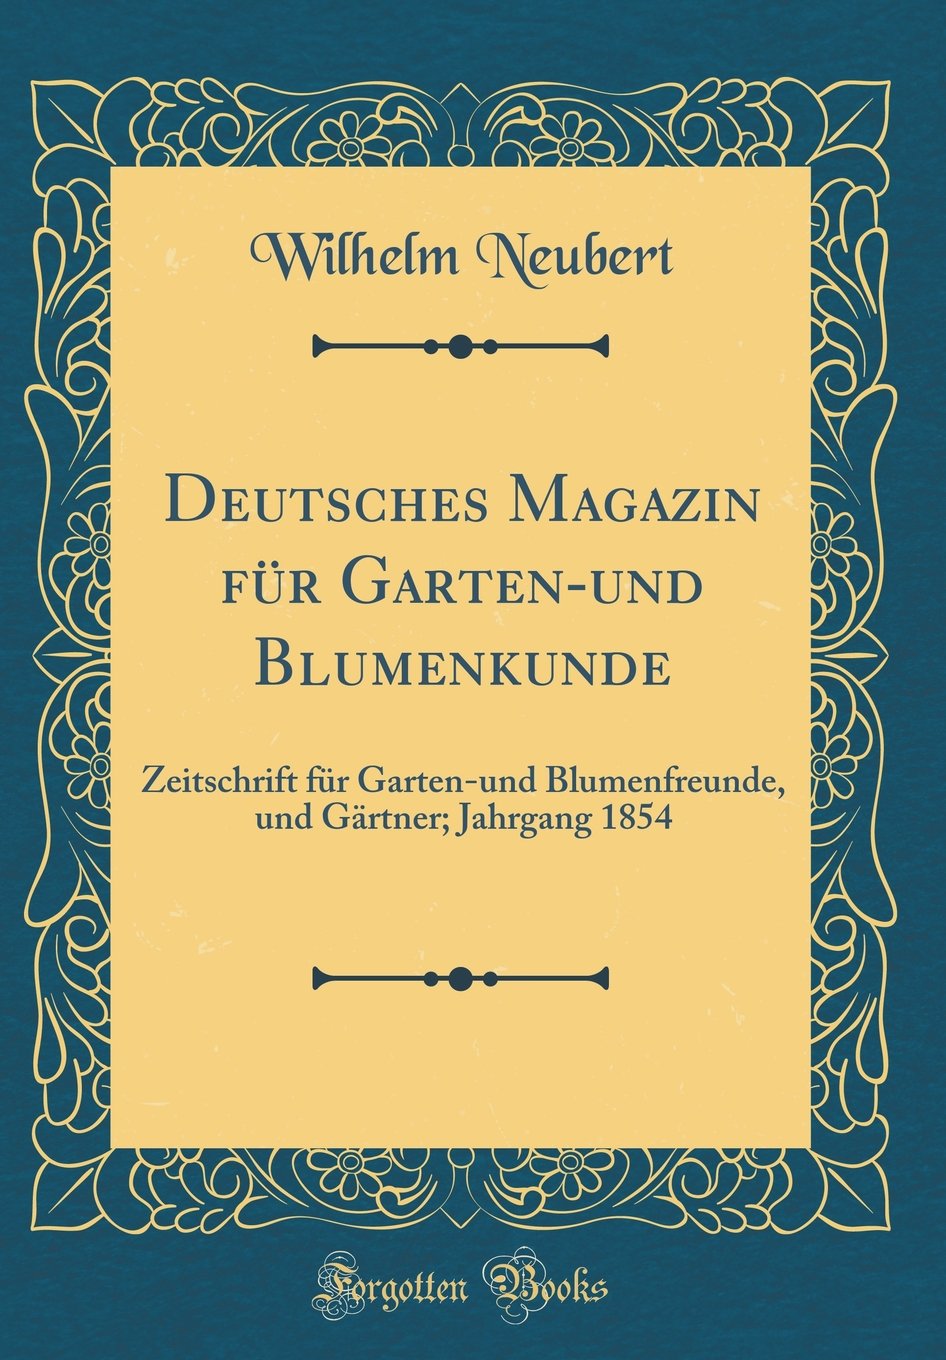 Garten Magazin Genial Deutsches Magazin Für Garten Und Blumenkunde Zeitschrift